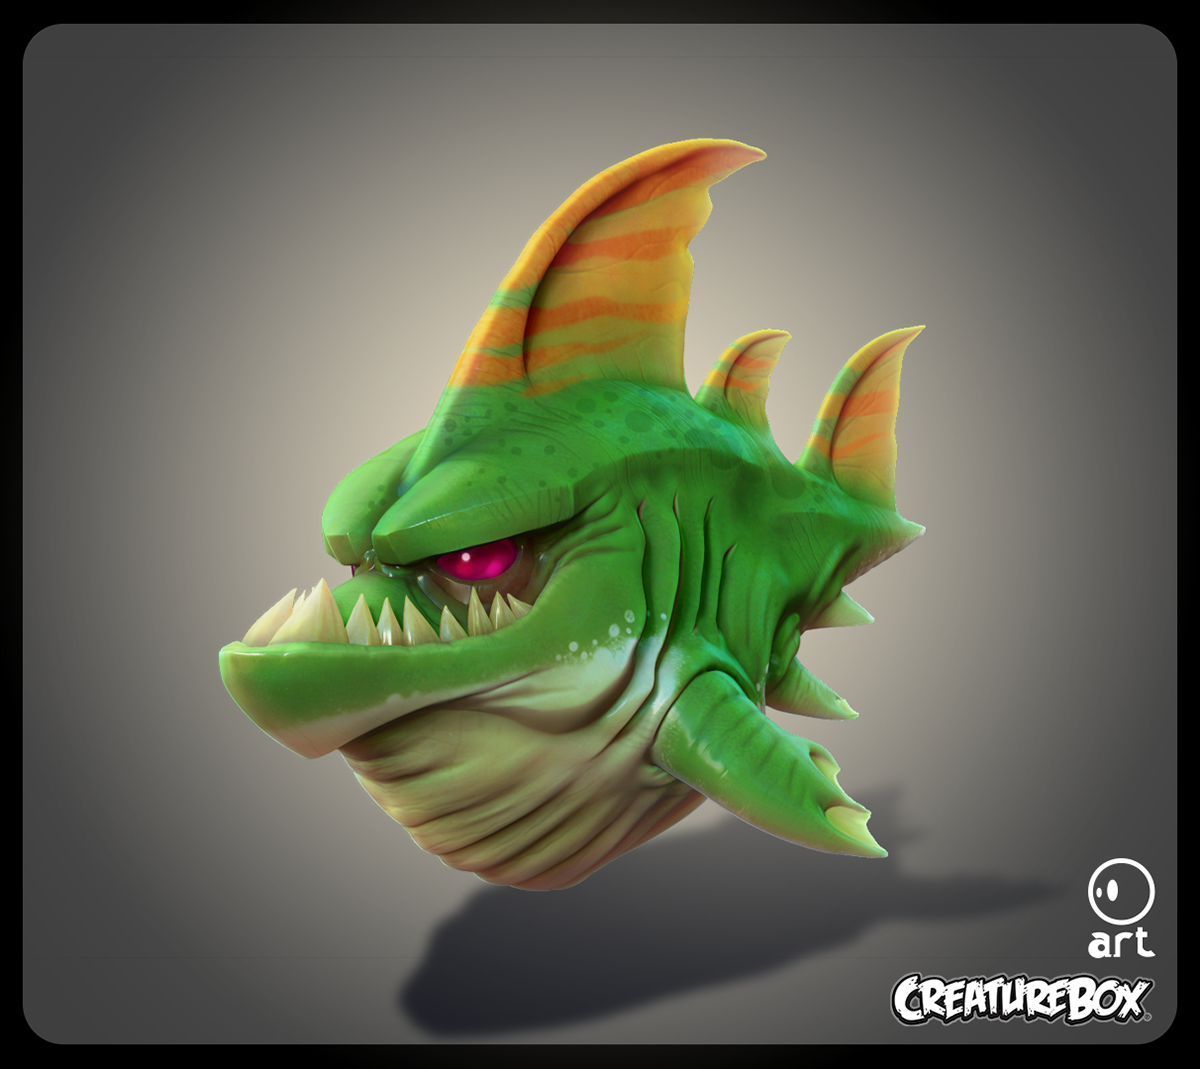 Fan Art "Pool sharks" Original Concept by CreatureBox. https://ww...